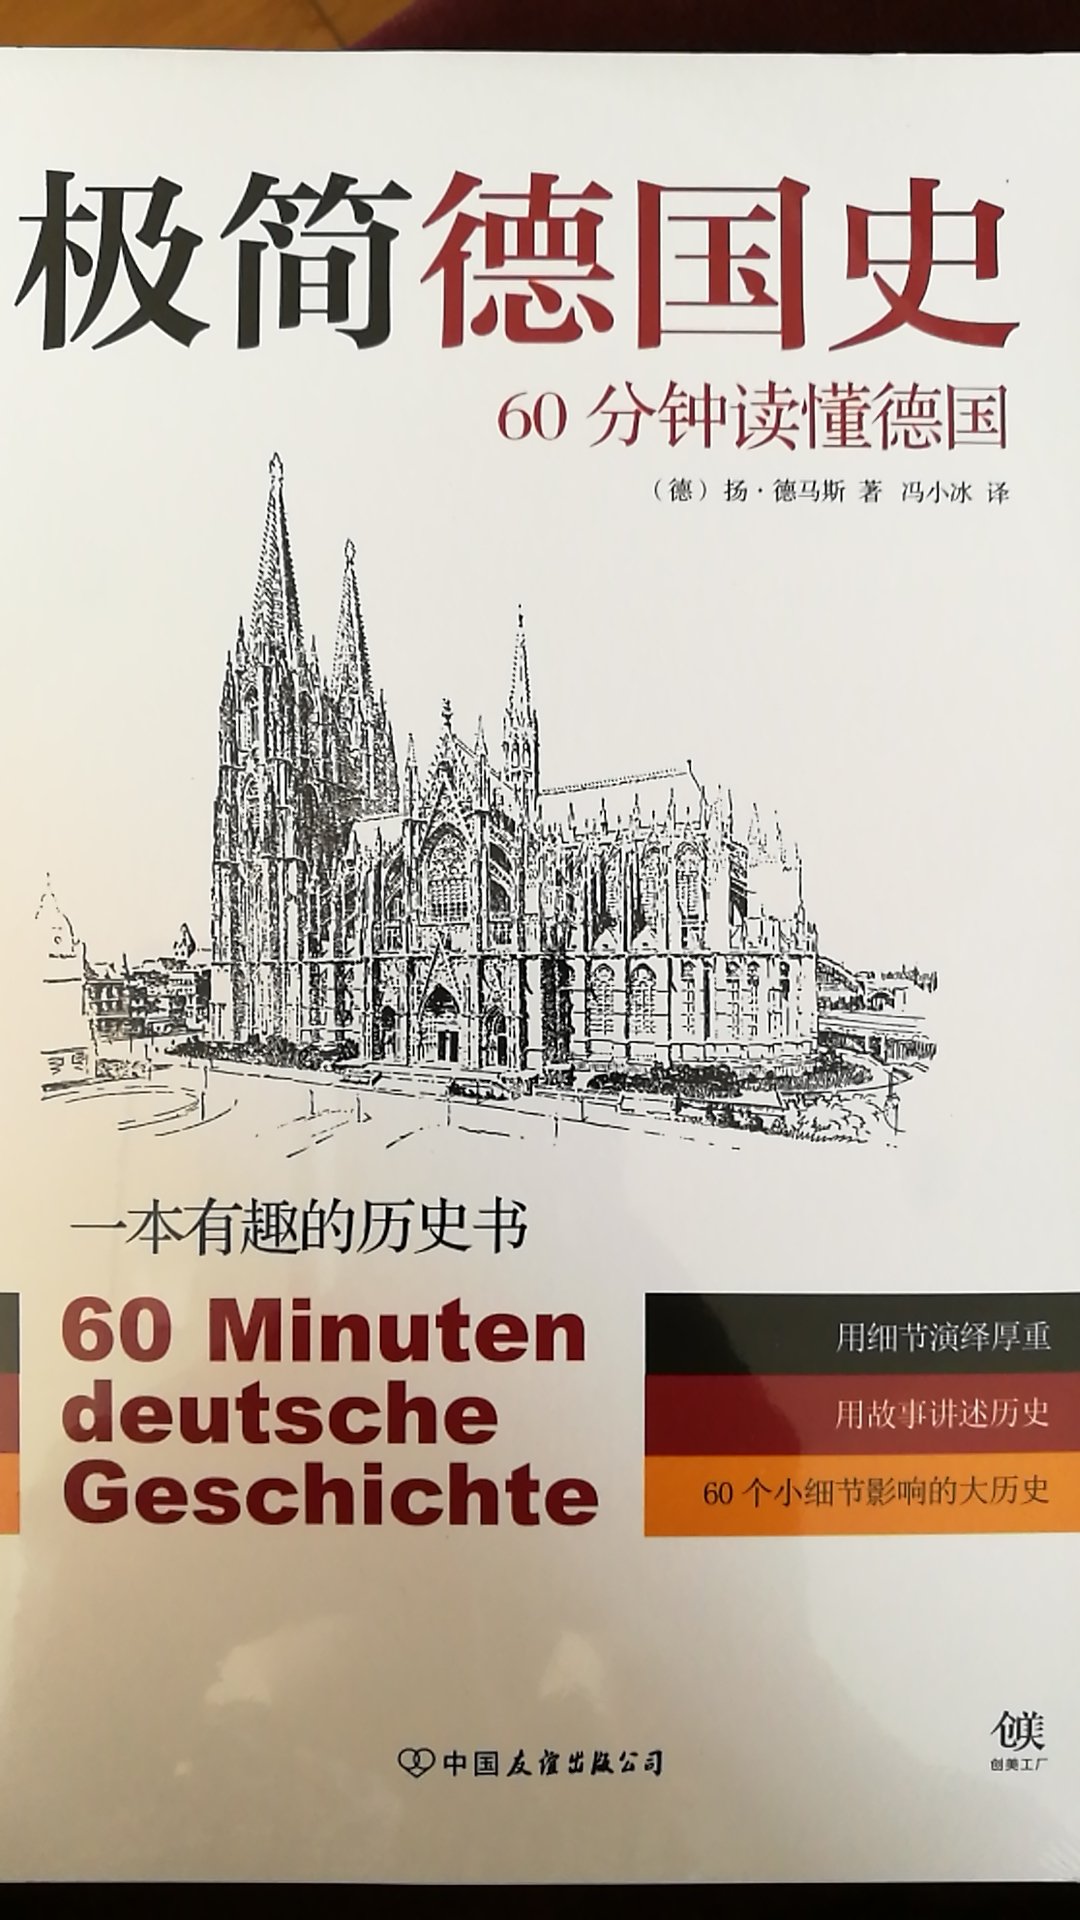 对德国历史比较感兴趣，这本读物正好可以在休闲时看看。包装完整。送货及时